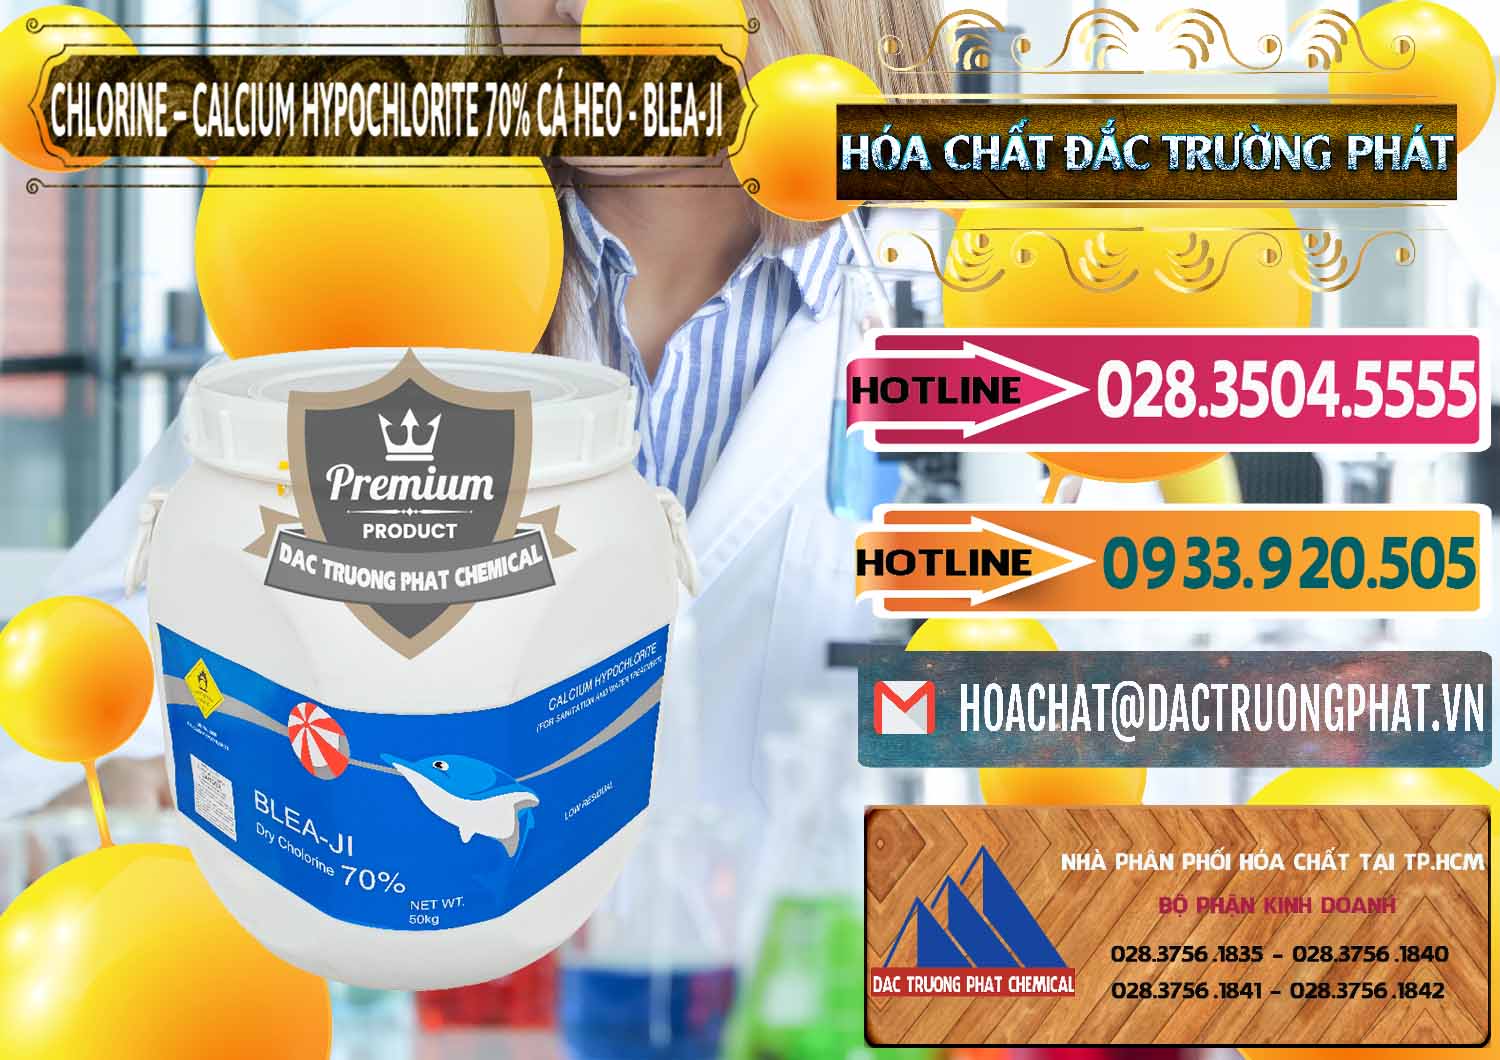 Cty chuyên nhập khẩu và bán Clorin - Chlorine Cá Heo 70% Blea-Ji Trung Quốc China - 0056 - Cty chuyên phân phối & nhập khẩu hóa chất tại TP.HCM - dactruongphat.vn